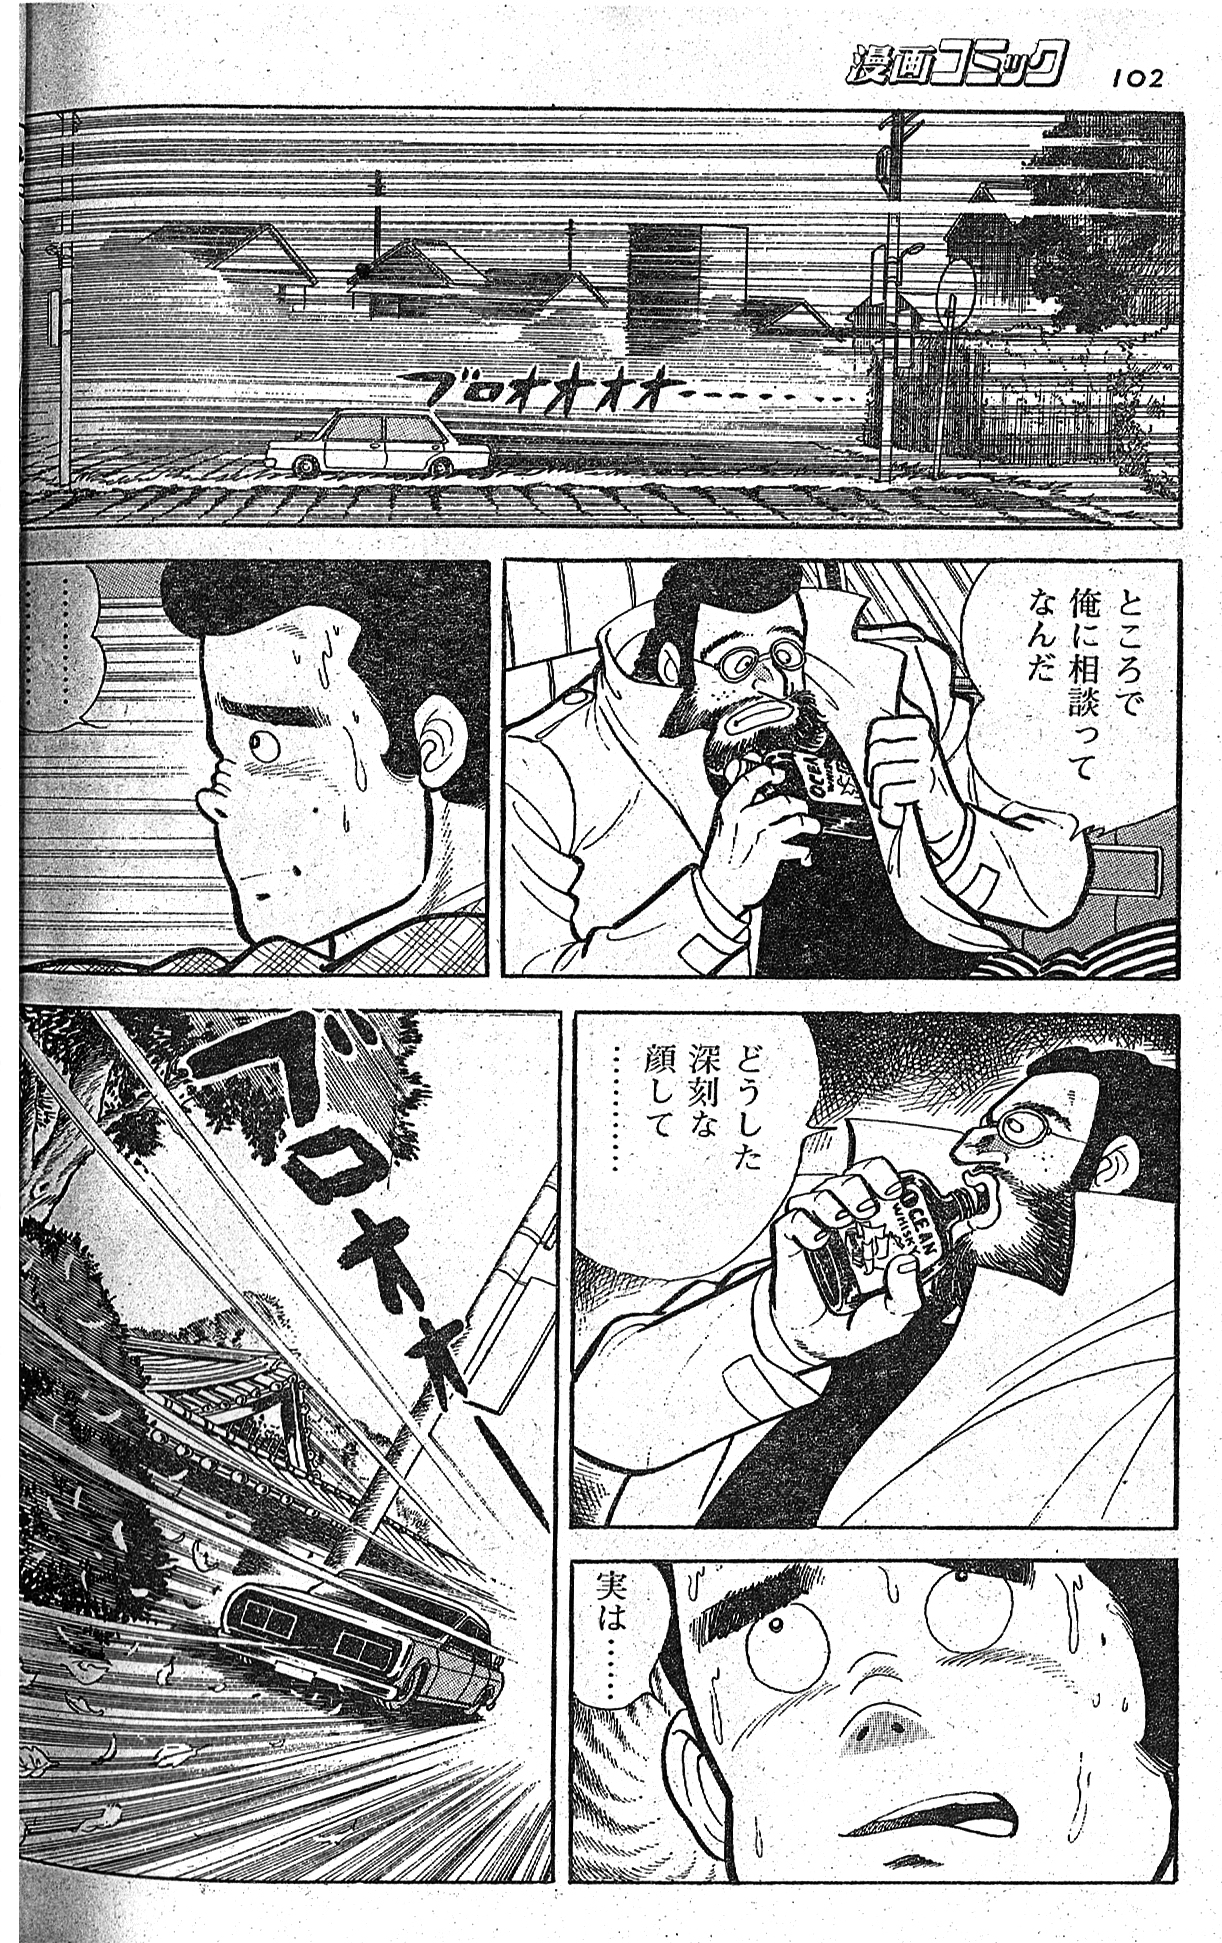 幻の漫画家・川島のりかず徹底解説 | SHURO | シュロ